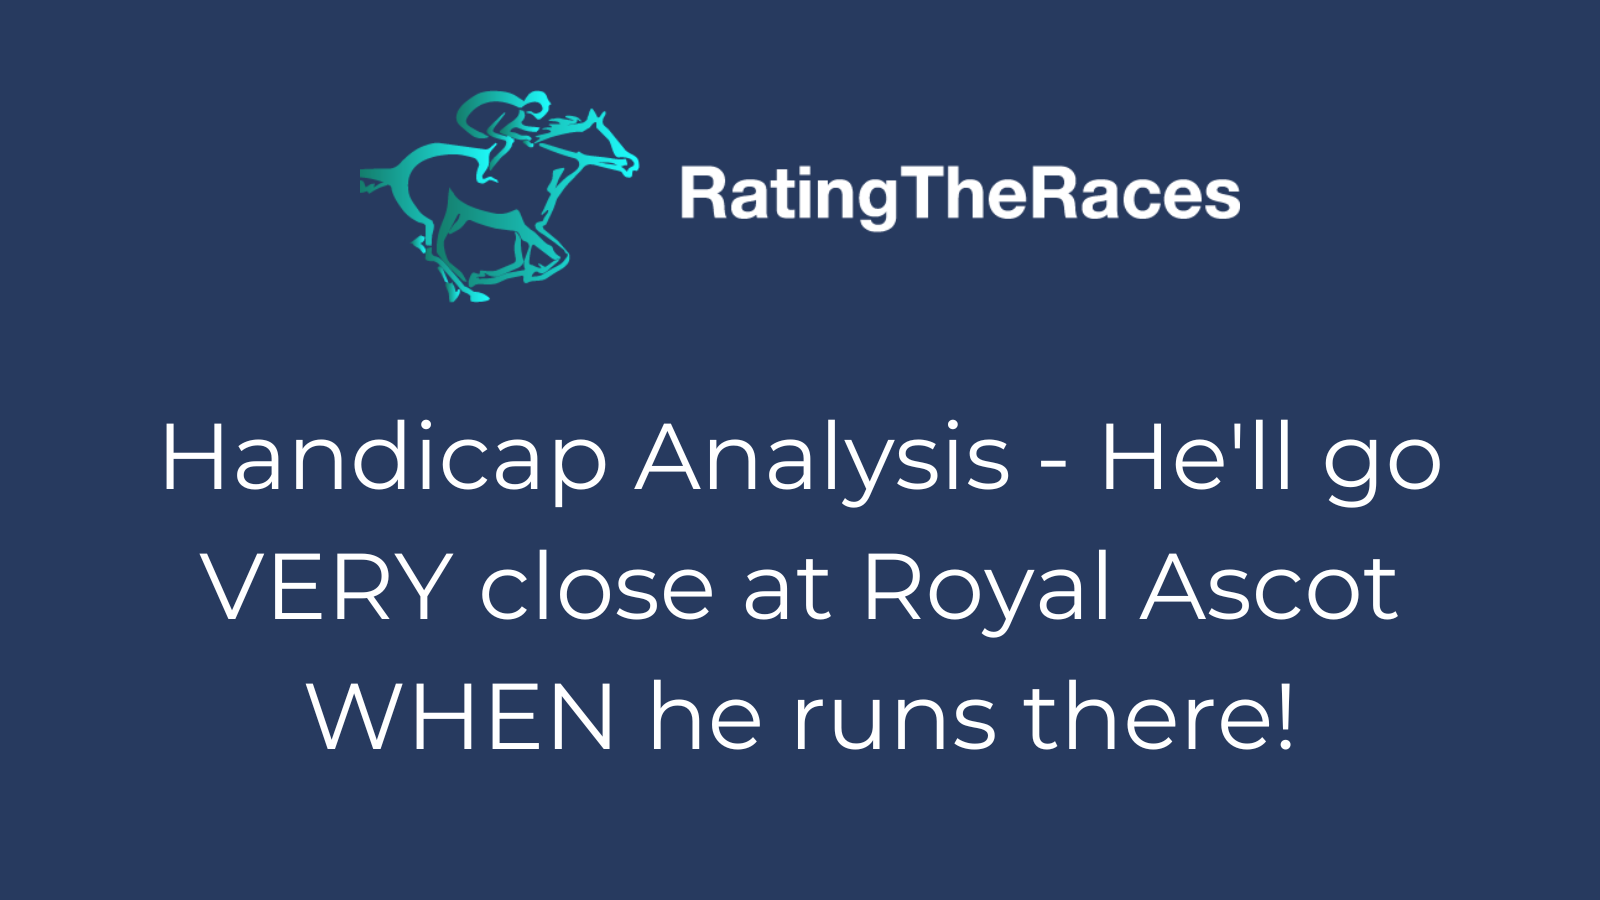 Handicap Analysis - Royal Ascot target